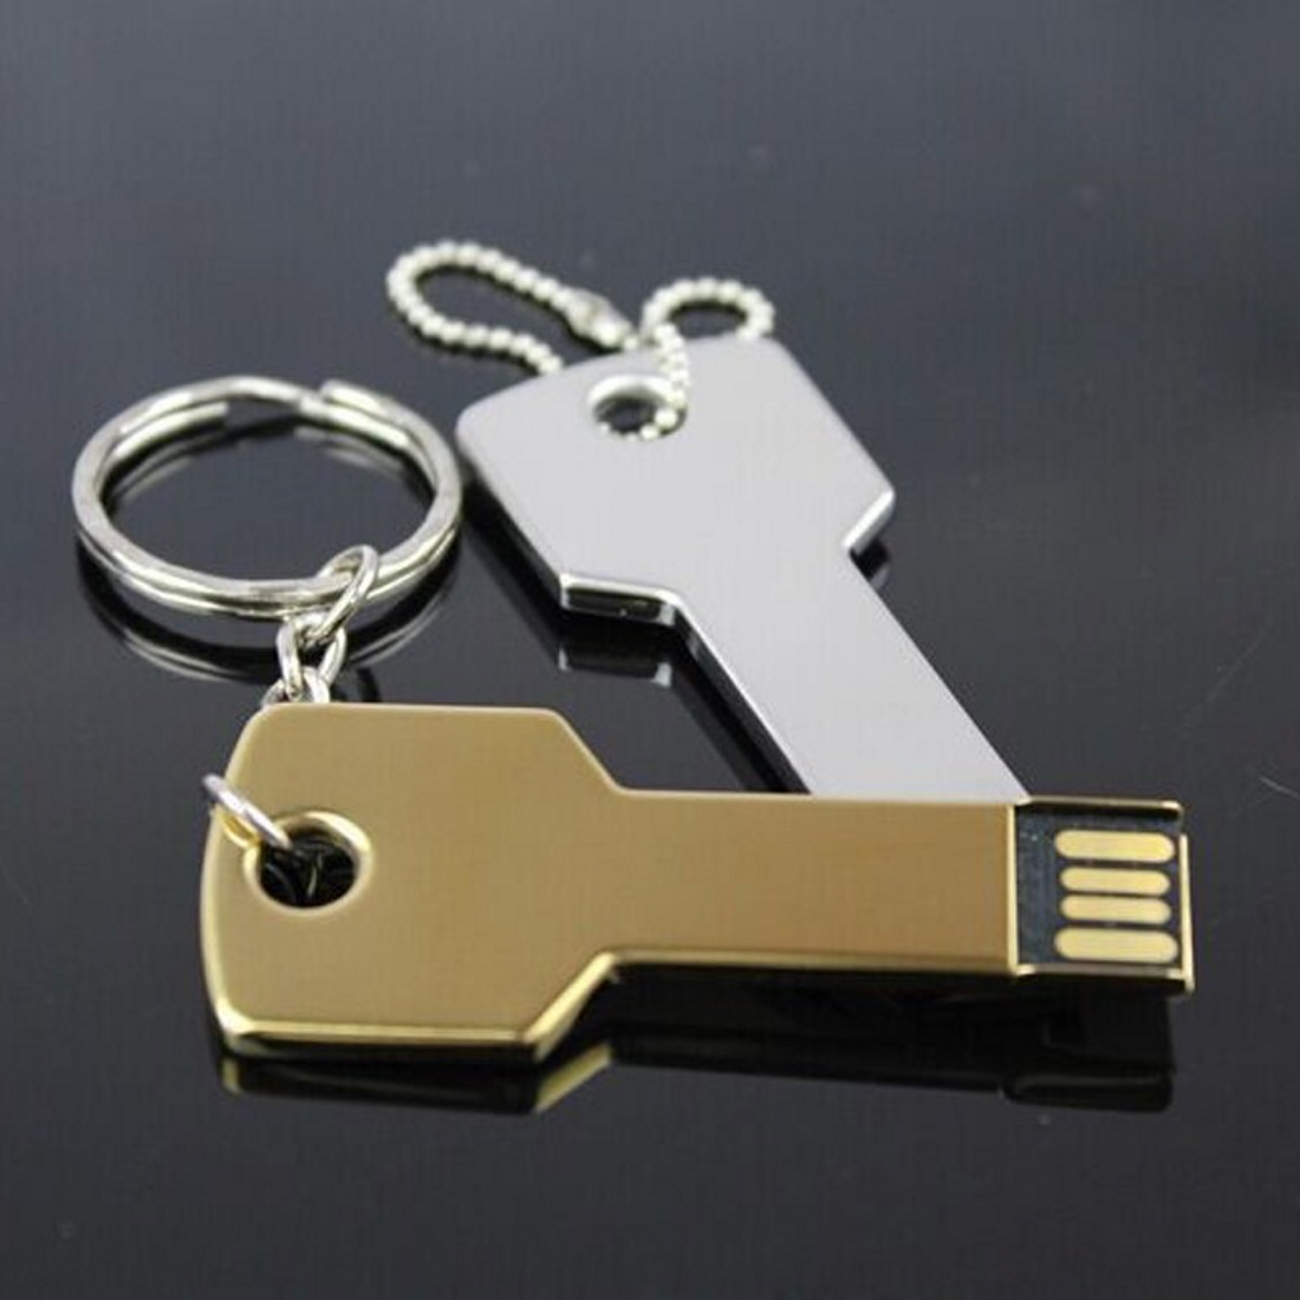 USB GERMANY Key Gold 4GB (Gold, 4 GB) USB-Stick